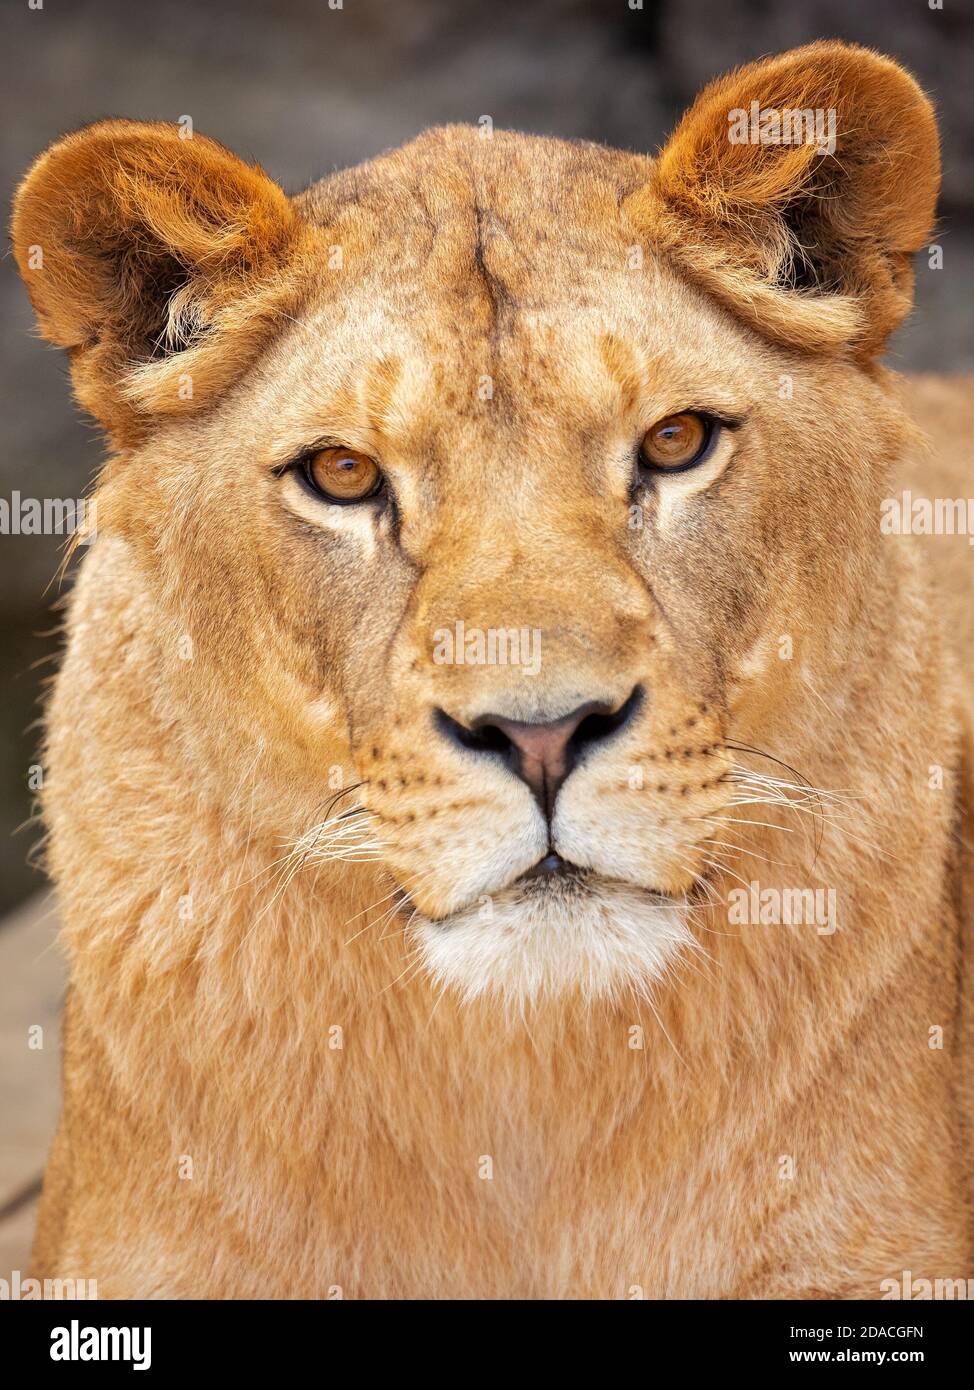 Cape Lion era una población de Panthera leo melanochaita en el sur Las provincias de Natal y Cabo de África que fue extirpada en la mediados del siglo xix Foto de stock